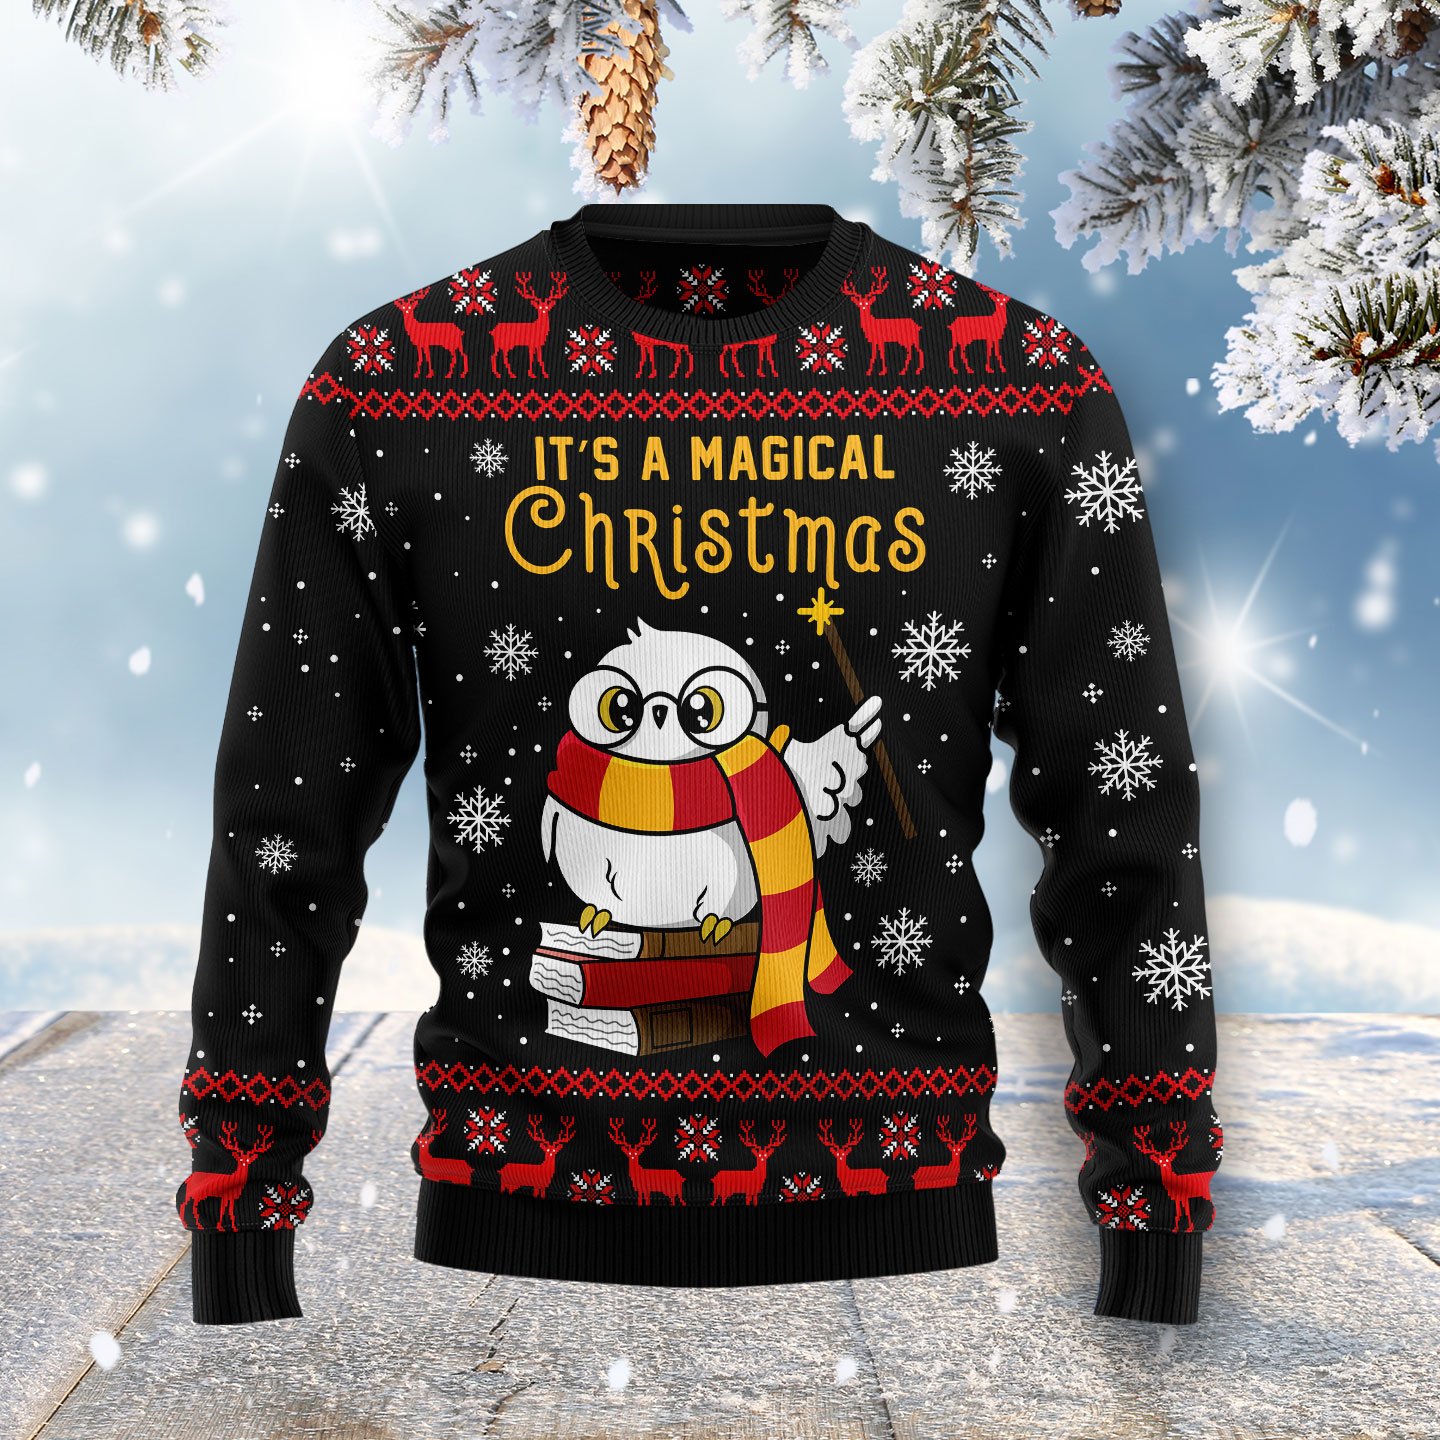 Magical Christmas Hz102701 Ugly Christmas Sweater